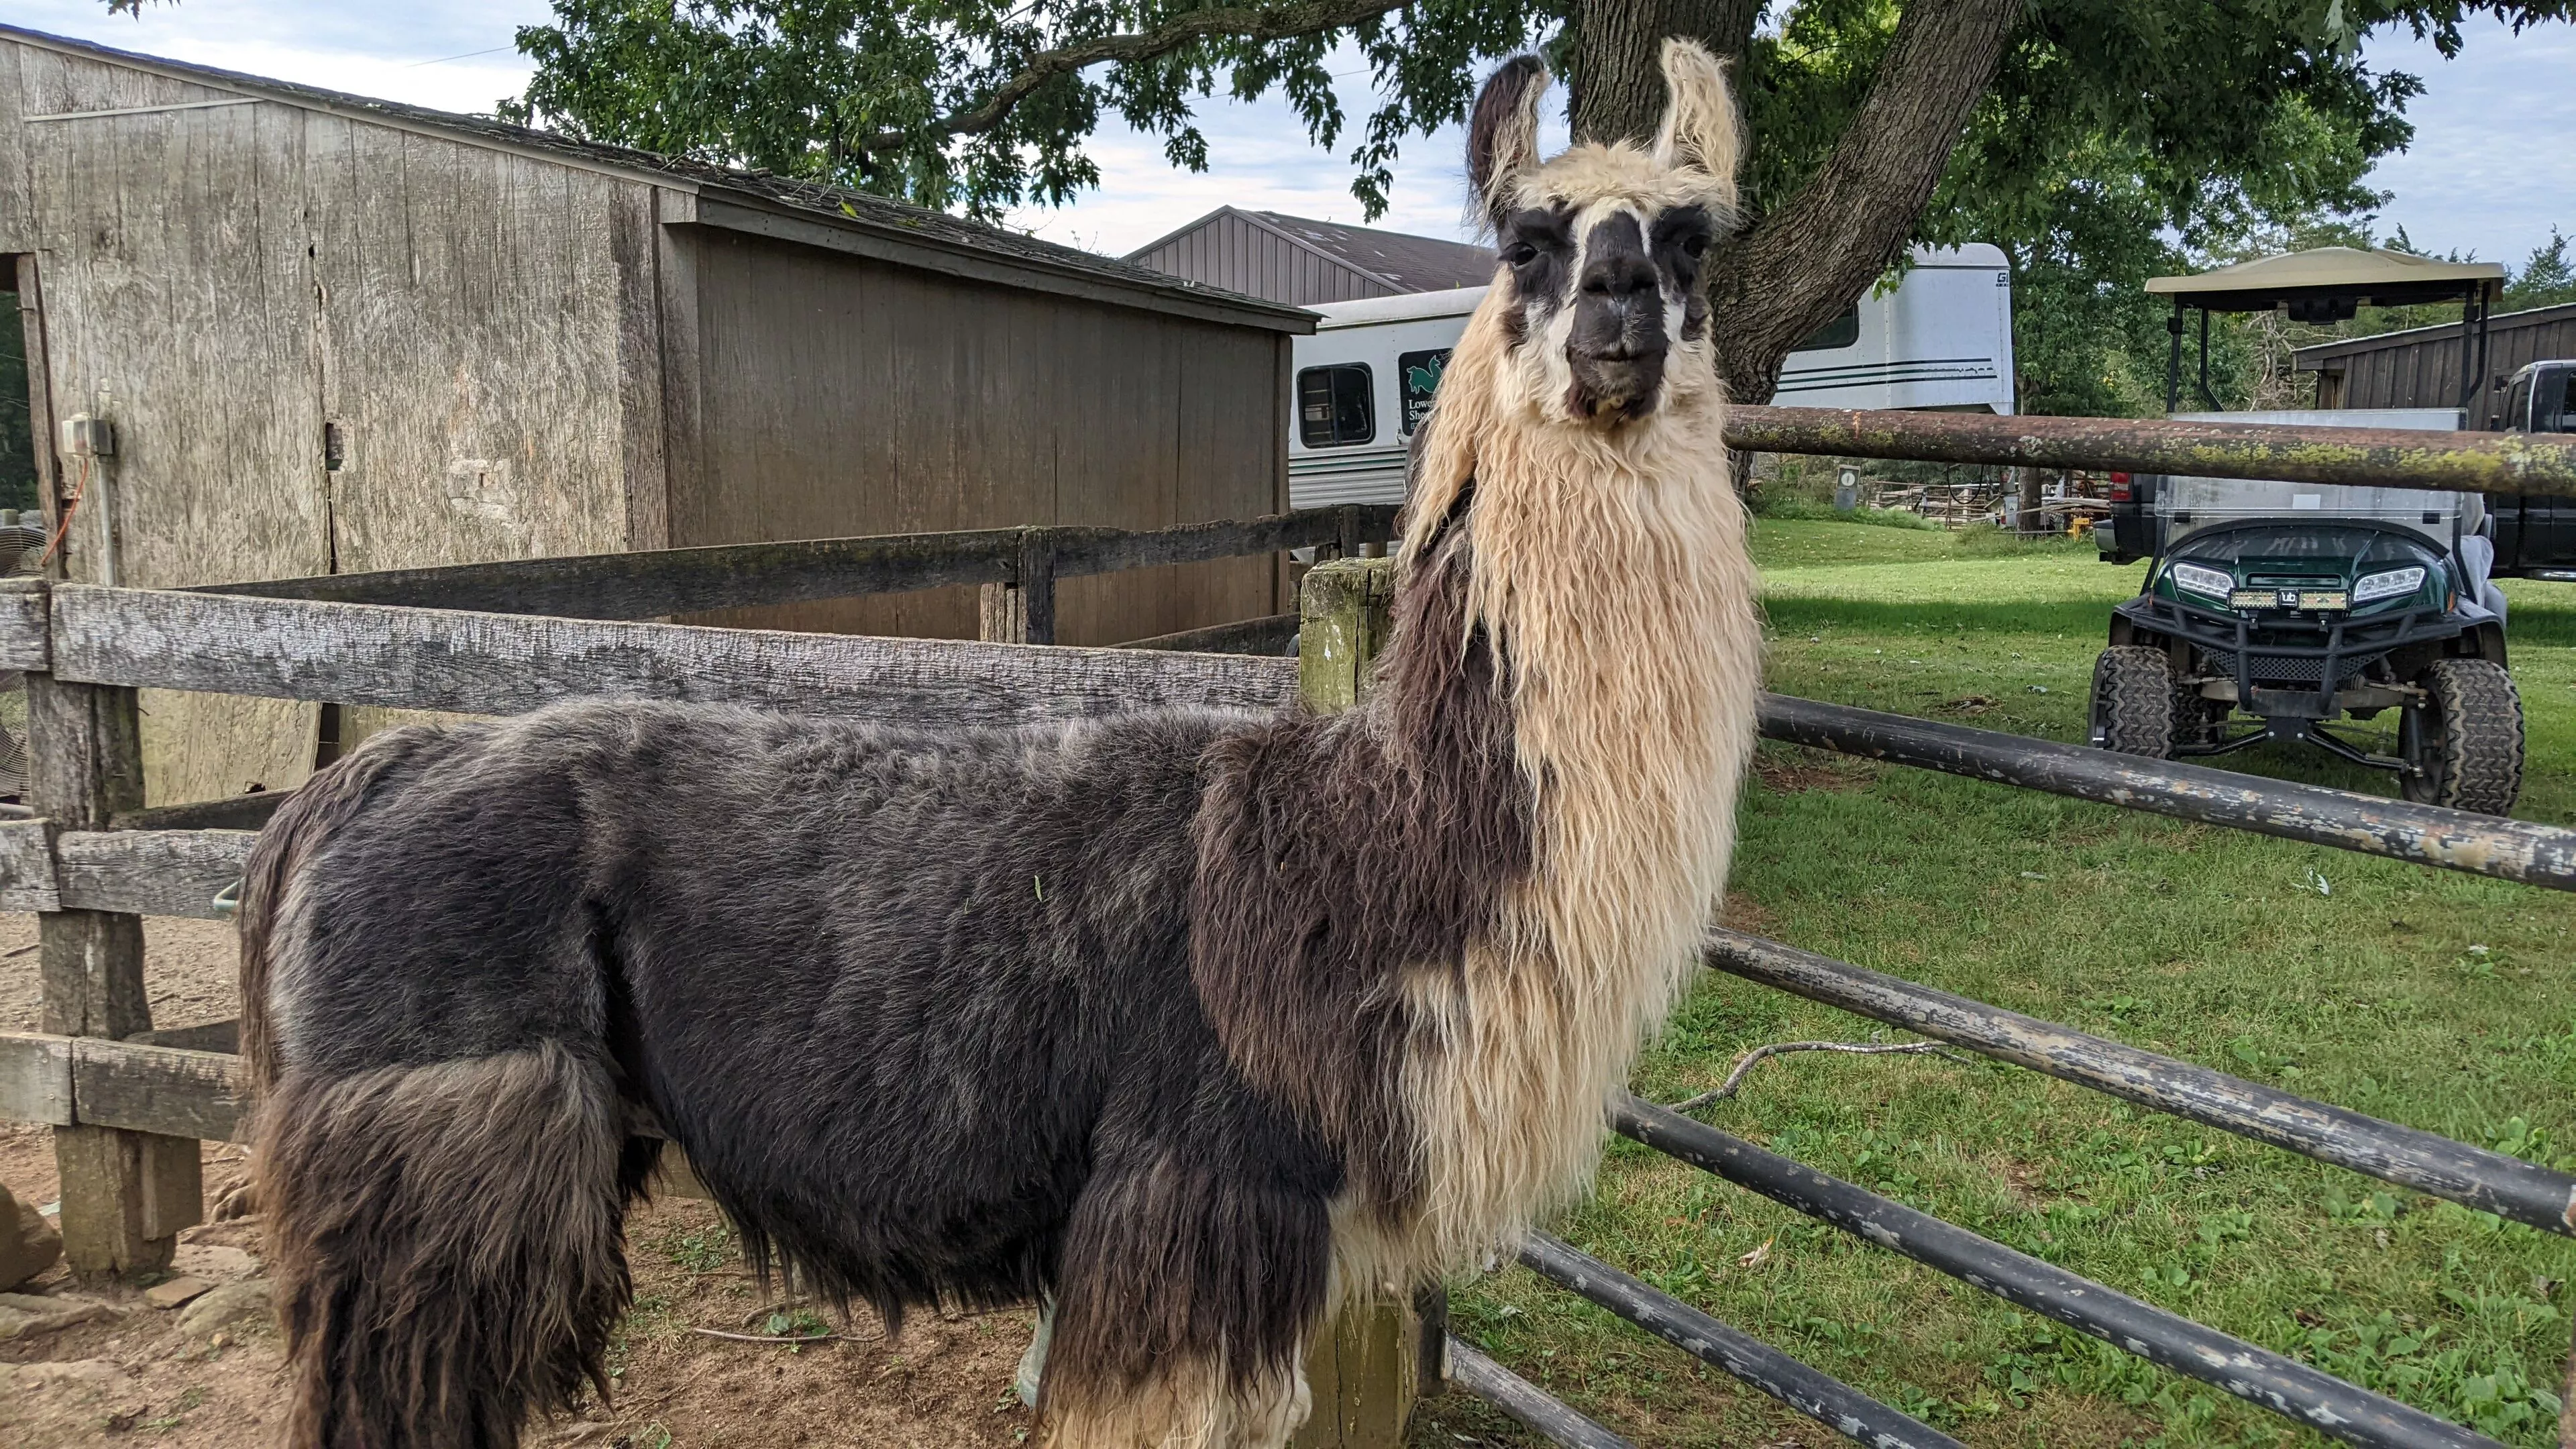 An image of a llama named King